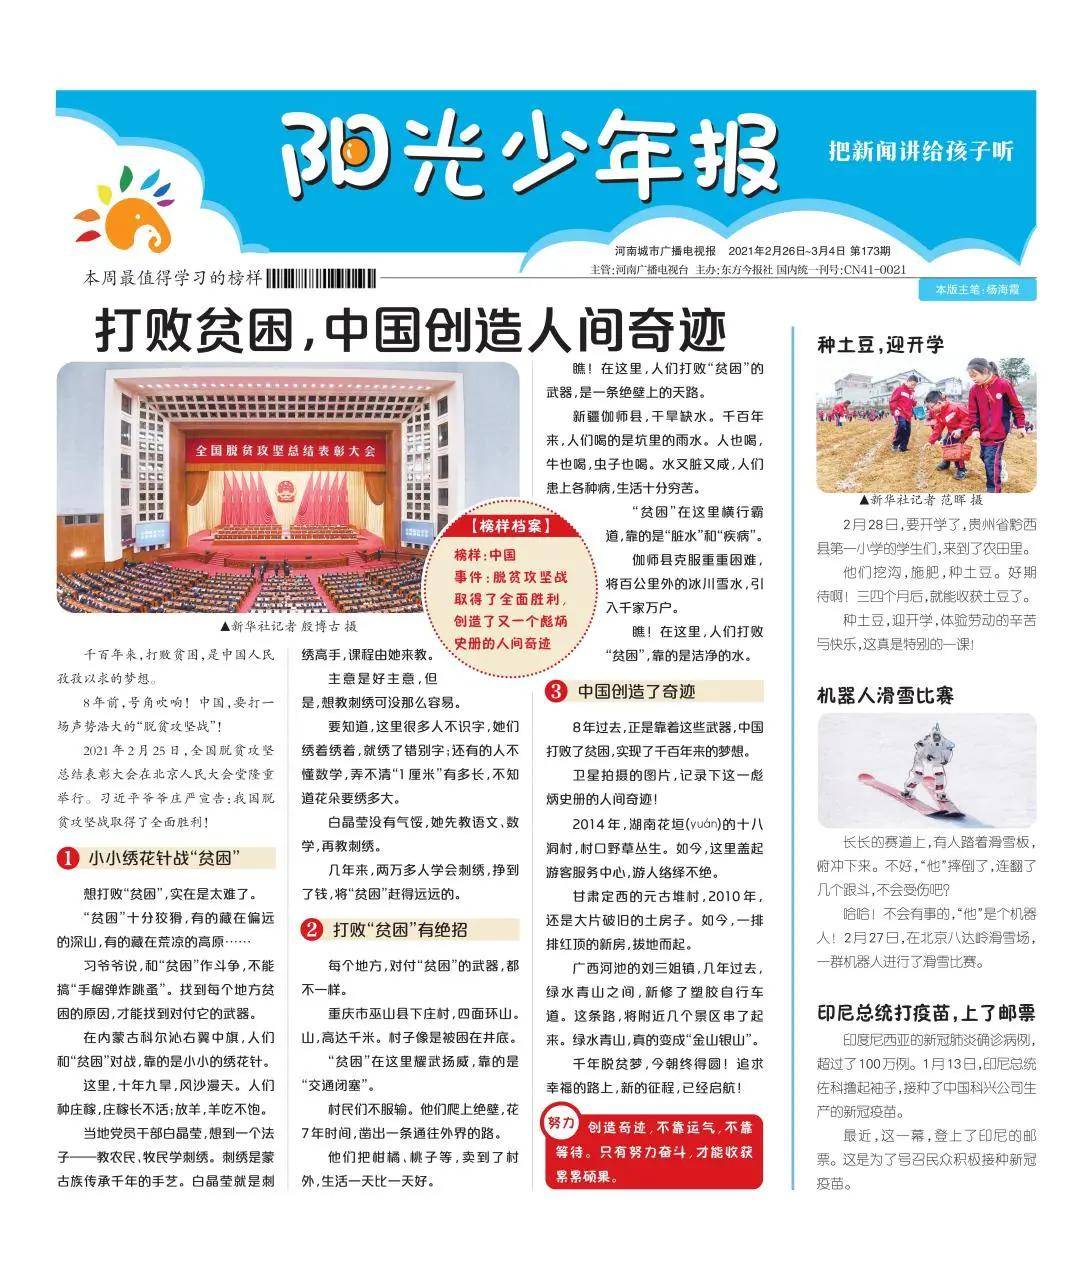 《阳光少年报》小学版全年43期,每期有8大版面,涵盖榜样人物,中国新闻